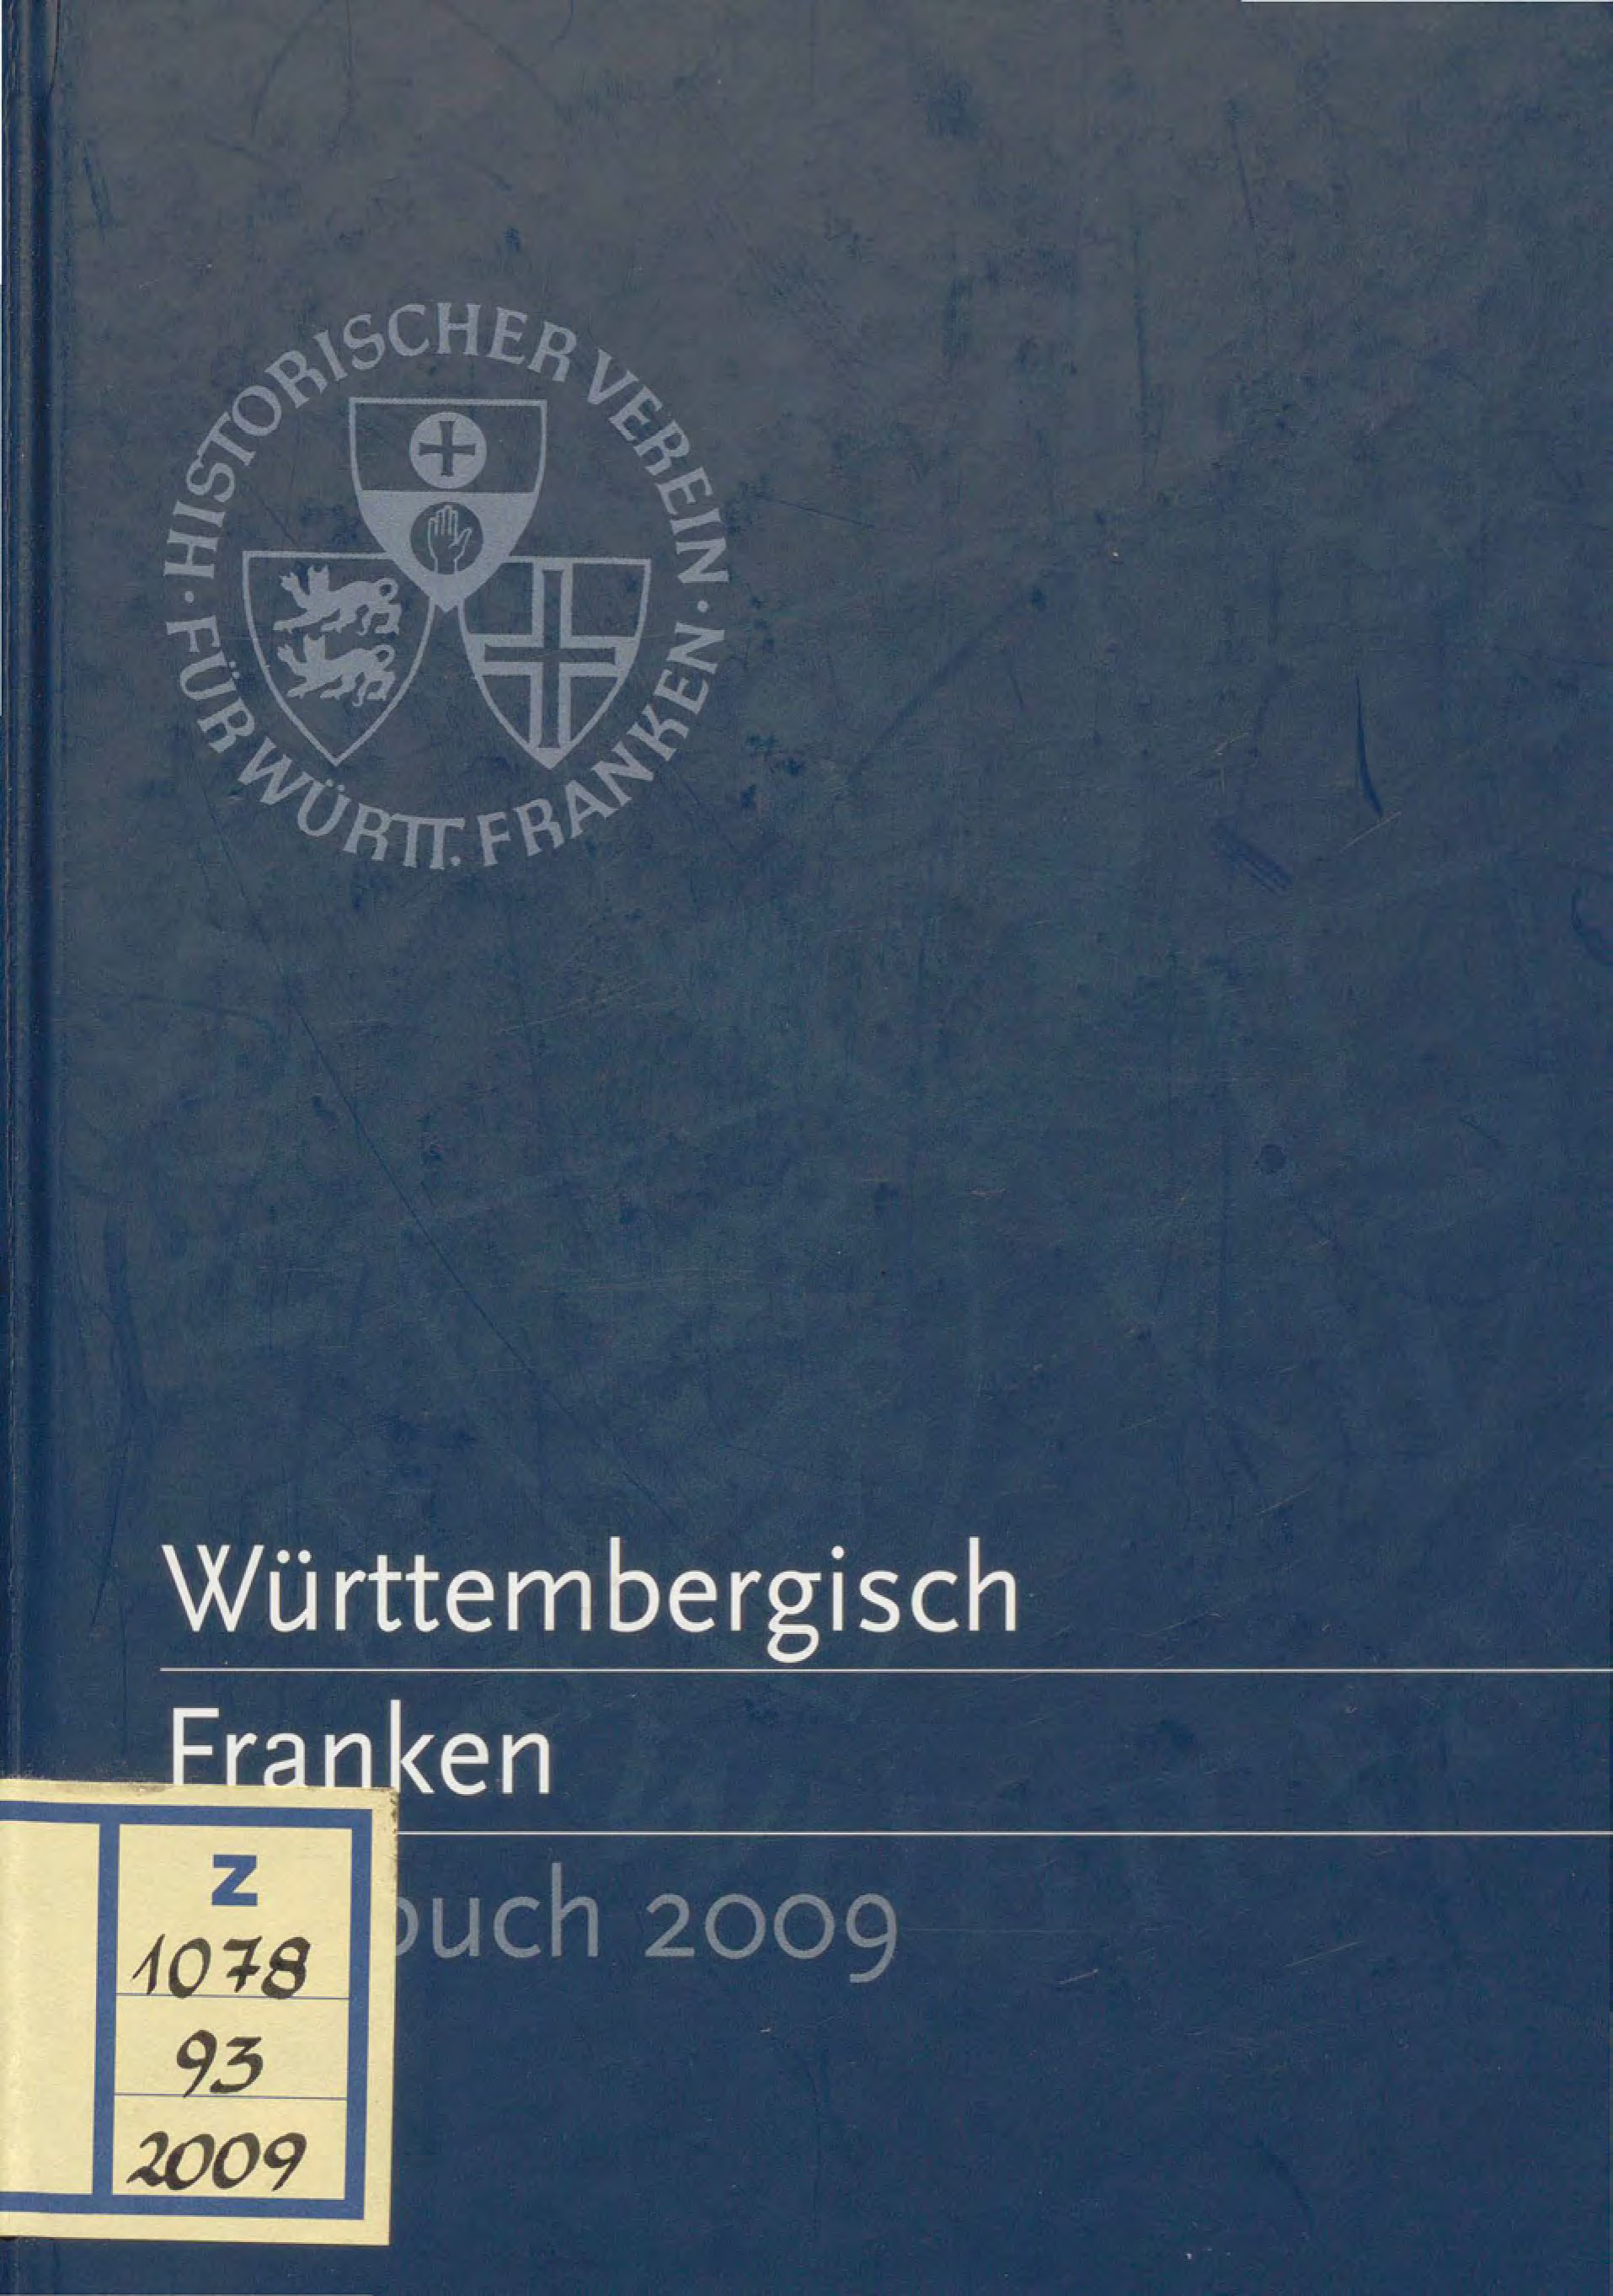                     Ansehen Bd. 93 (2009): Württembergisch Franken
                